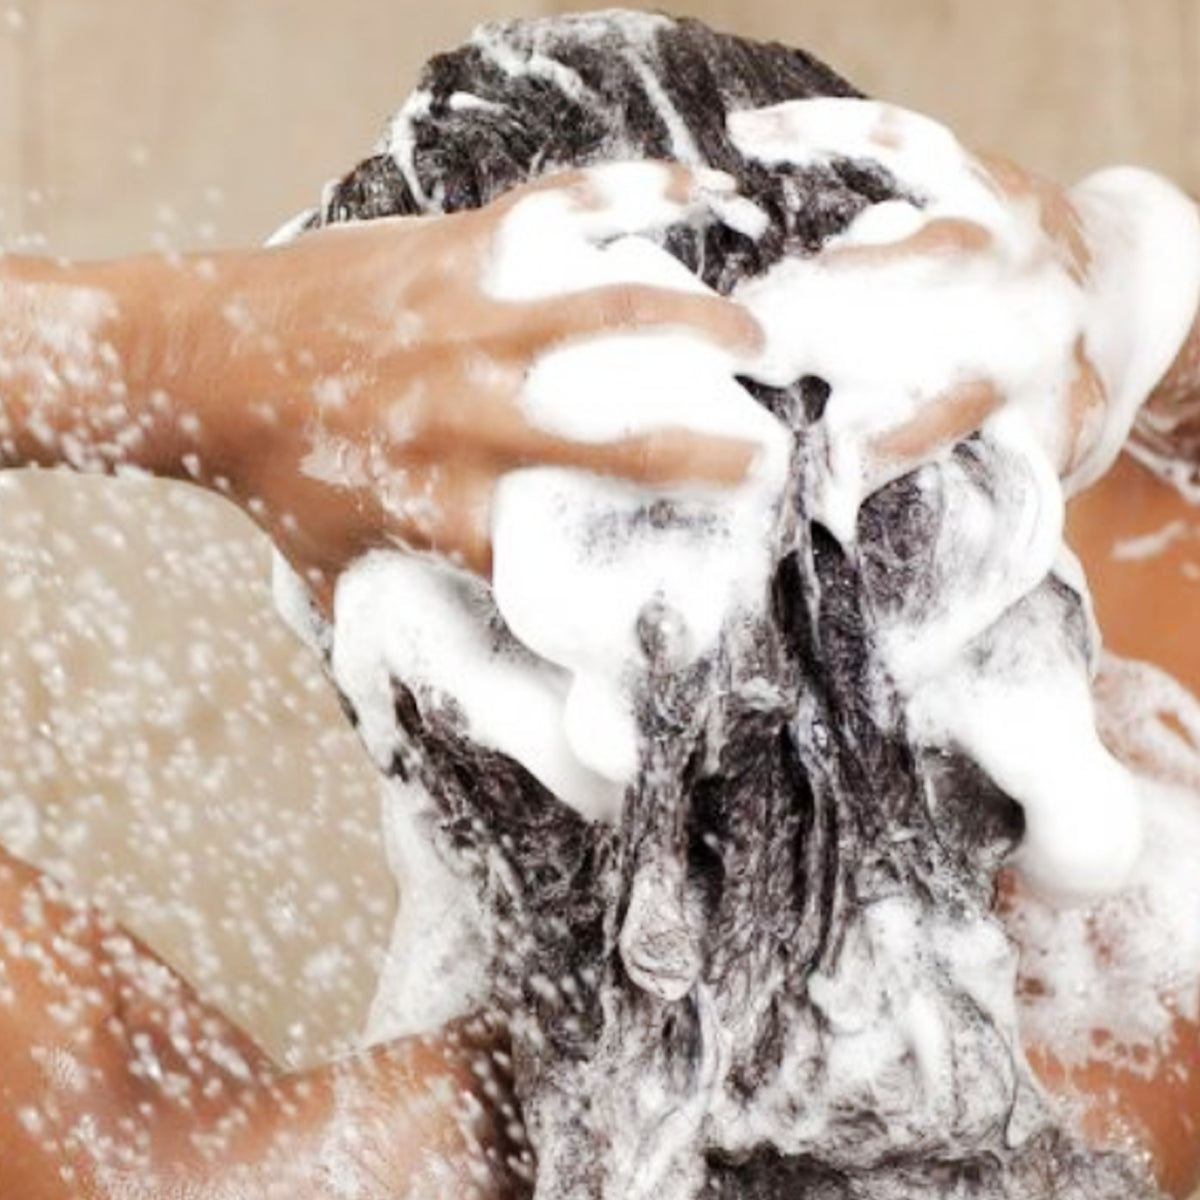 shampoo alquitran con minoxidil 1 litro